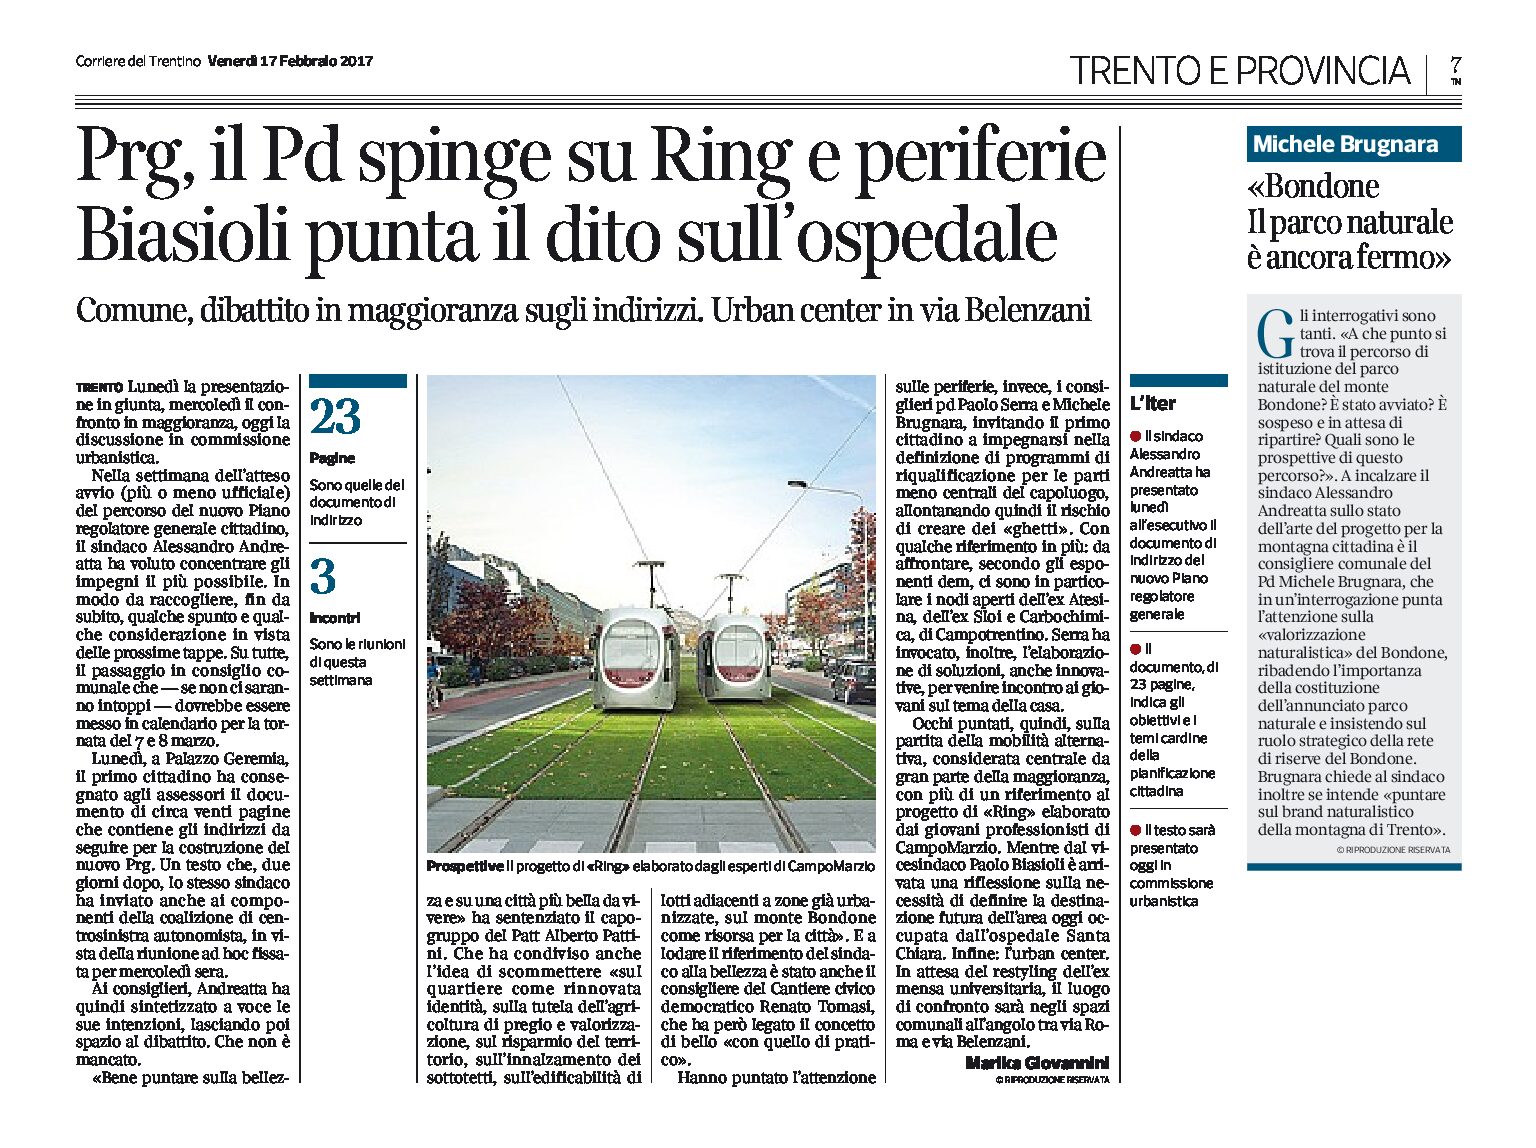 Trento, nuovo Prg: il Pd spinge su Ring e periferie, Biasioli sull’ospedale